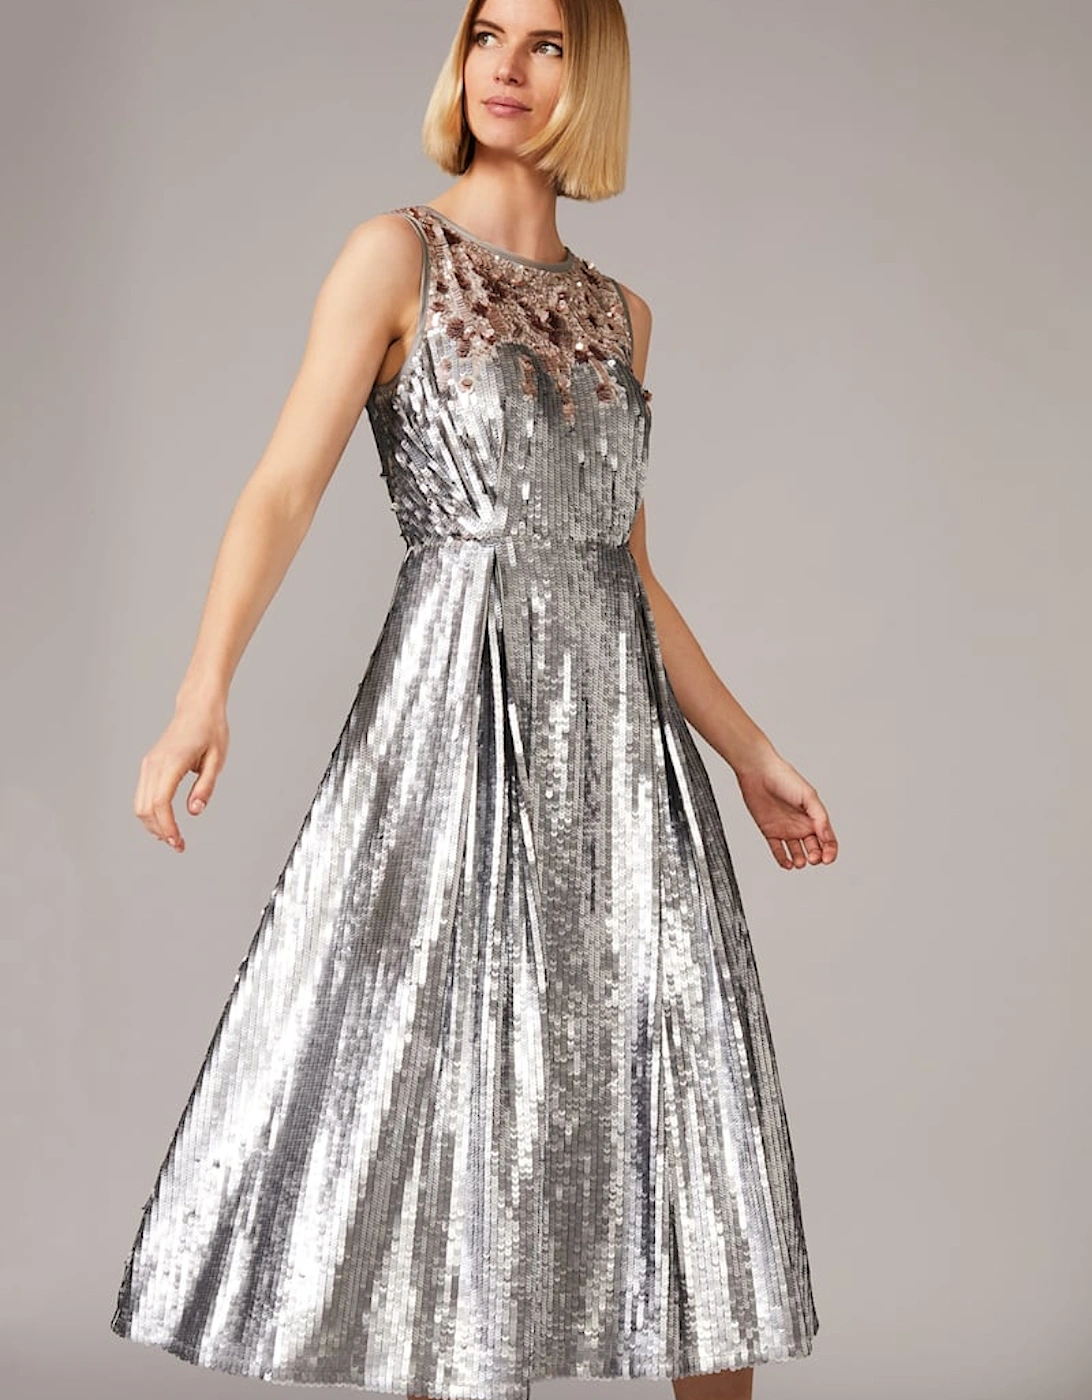 Lainey Shimmer Sequin Midi Dress, 7 of 6